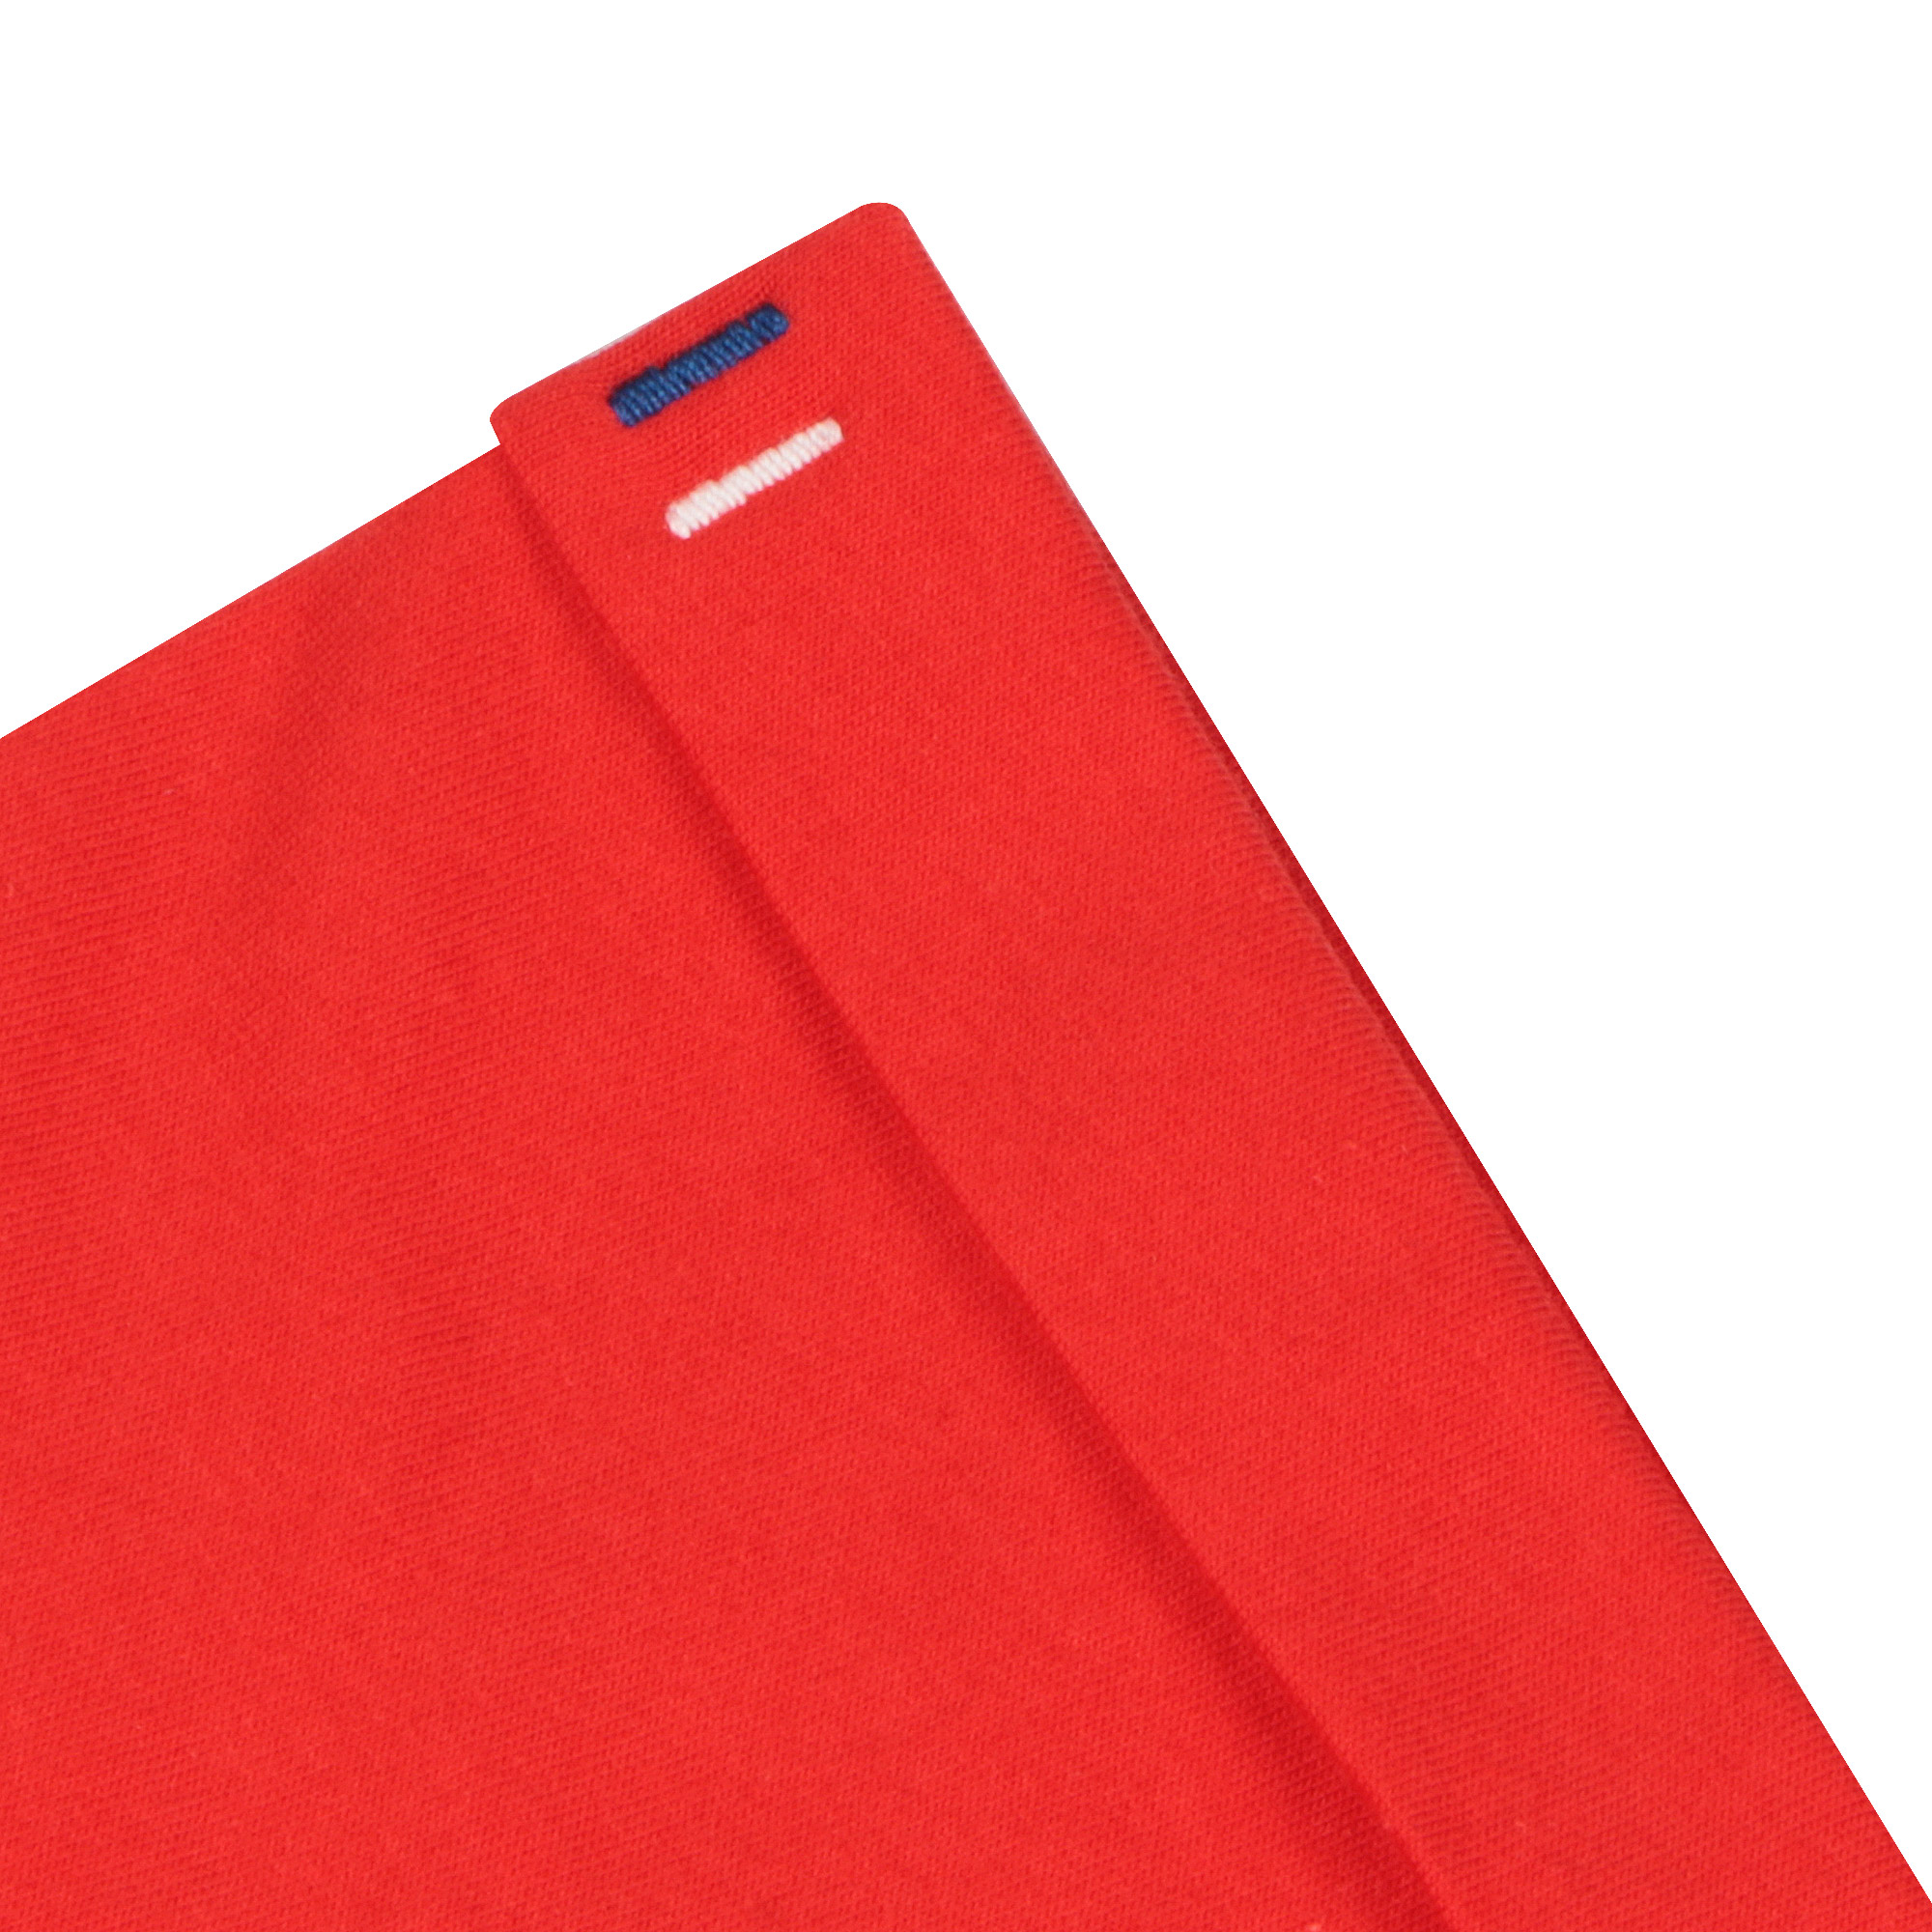 Мужская футболка Pantelemone MF-898 красная 50, цвет красный, размер 50 - фото 5